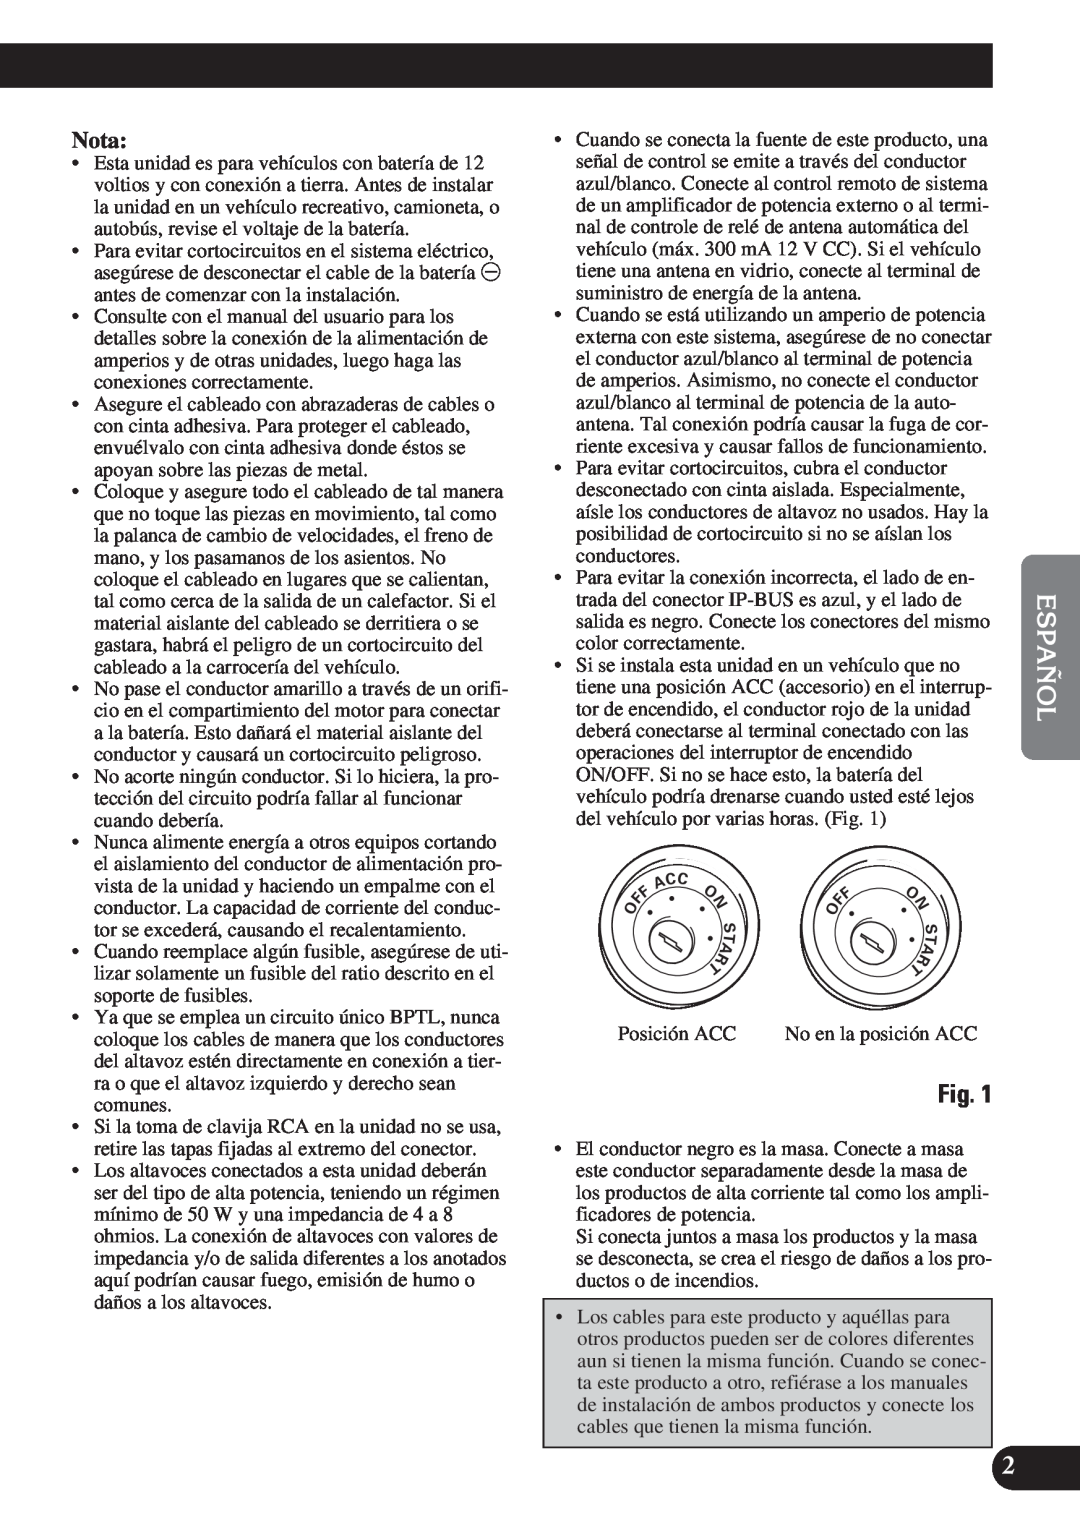 Pioneer AVH-P6400CD installation manual English Español Español Français Italiano Nederlands, Nota 